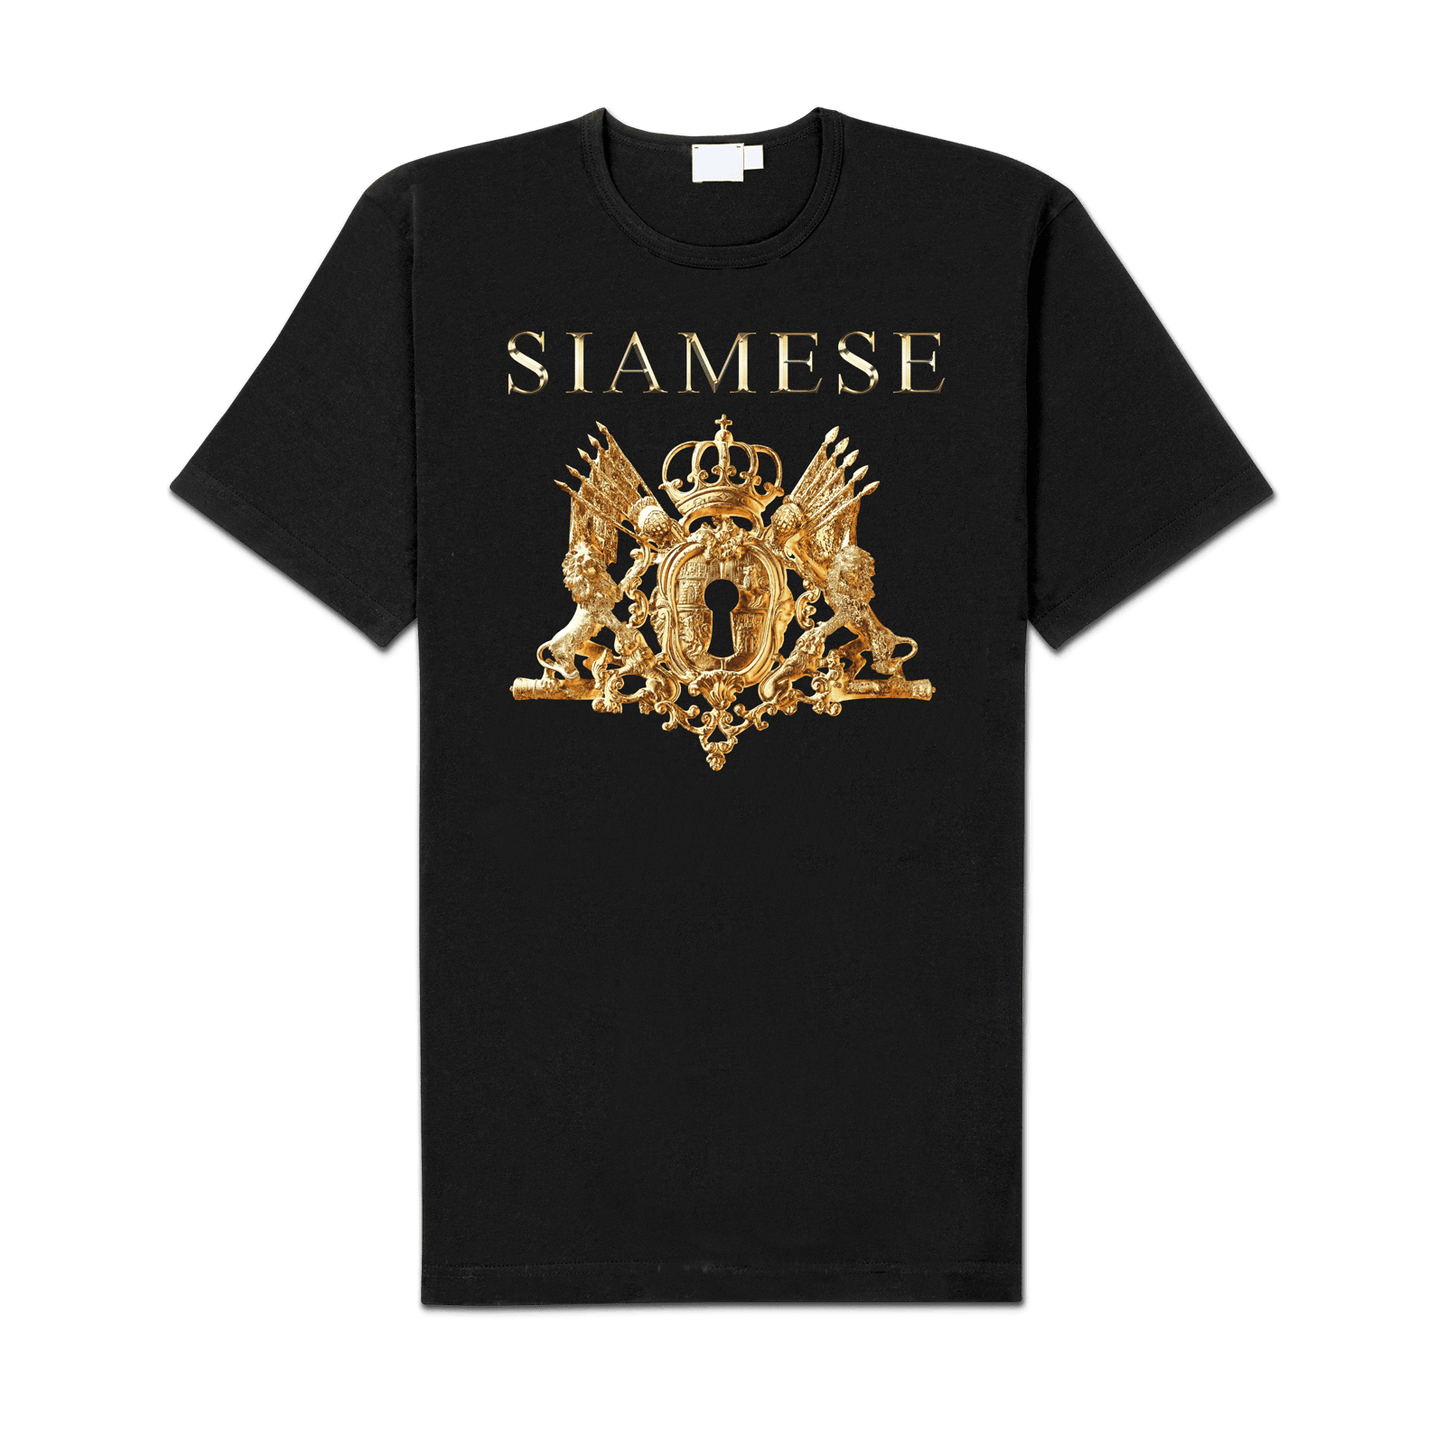 Siamese "Home" Shirt